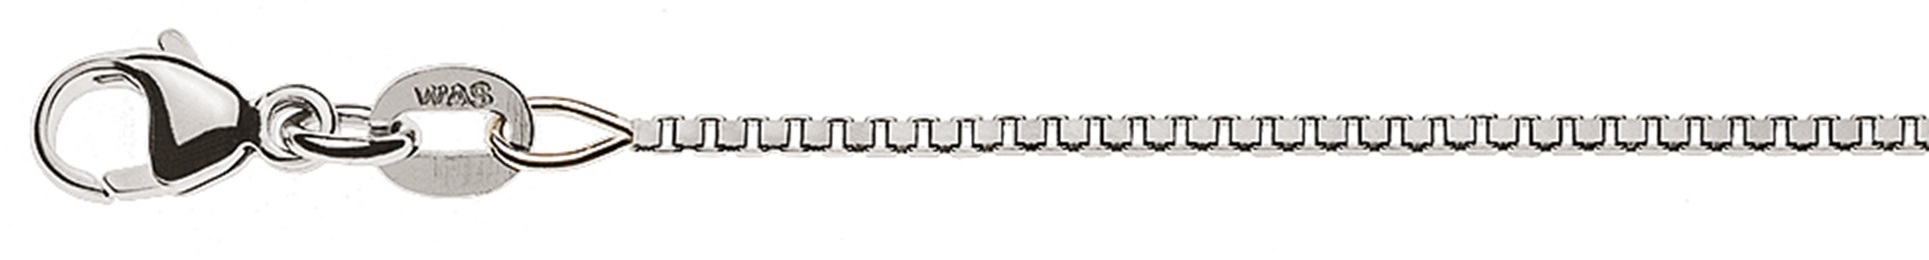 AURONOS Style Halskette Weissgold 9K Venezianerkette diamantiert 45cm 1.1mm